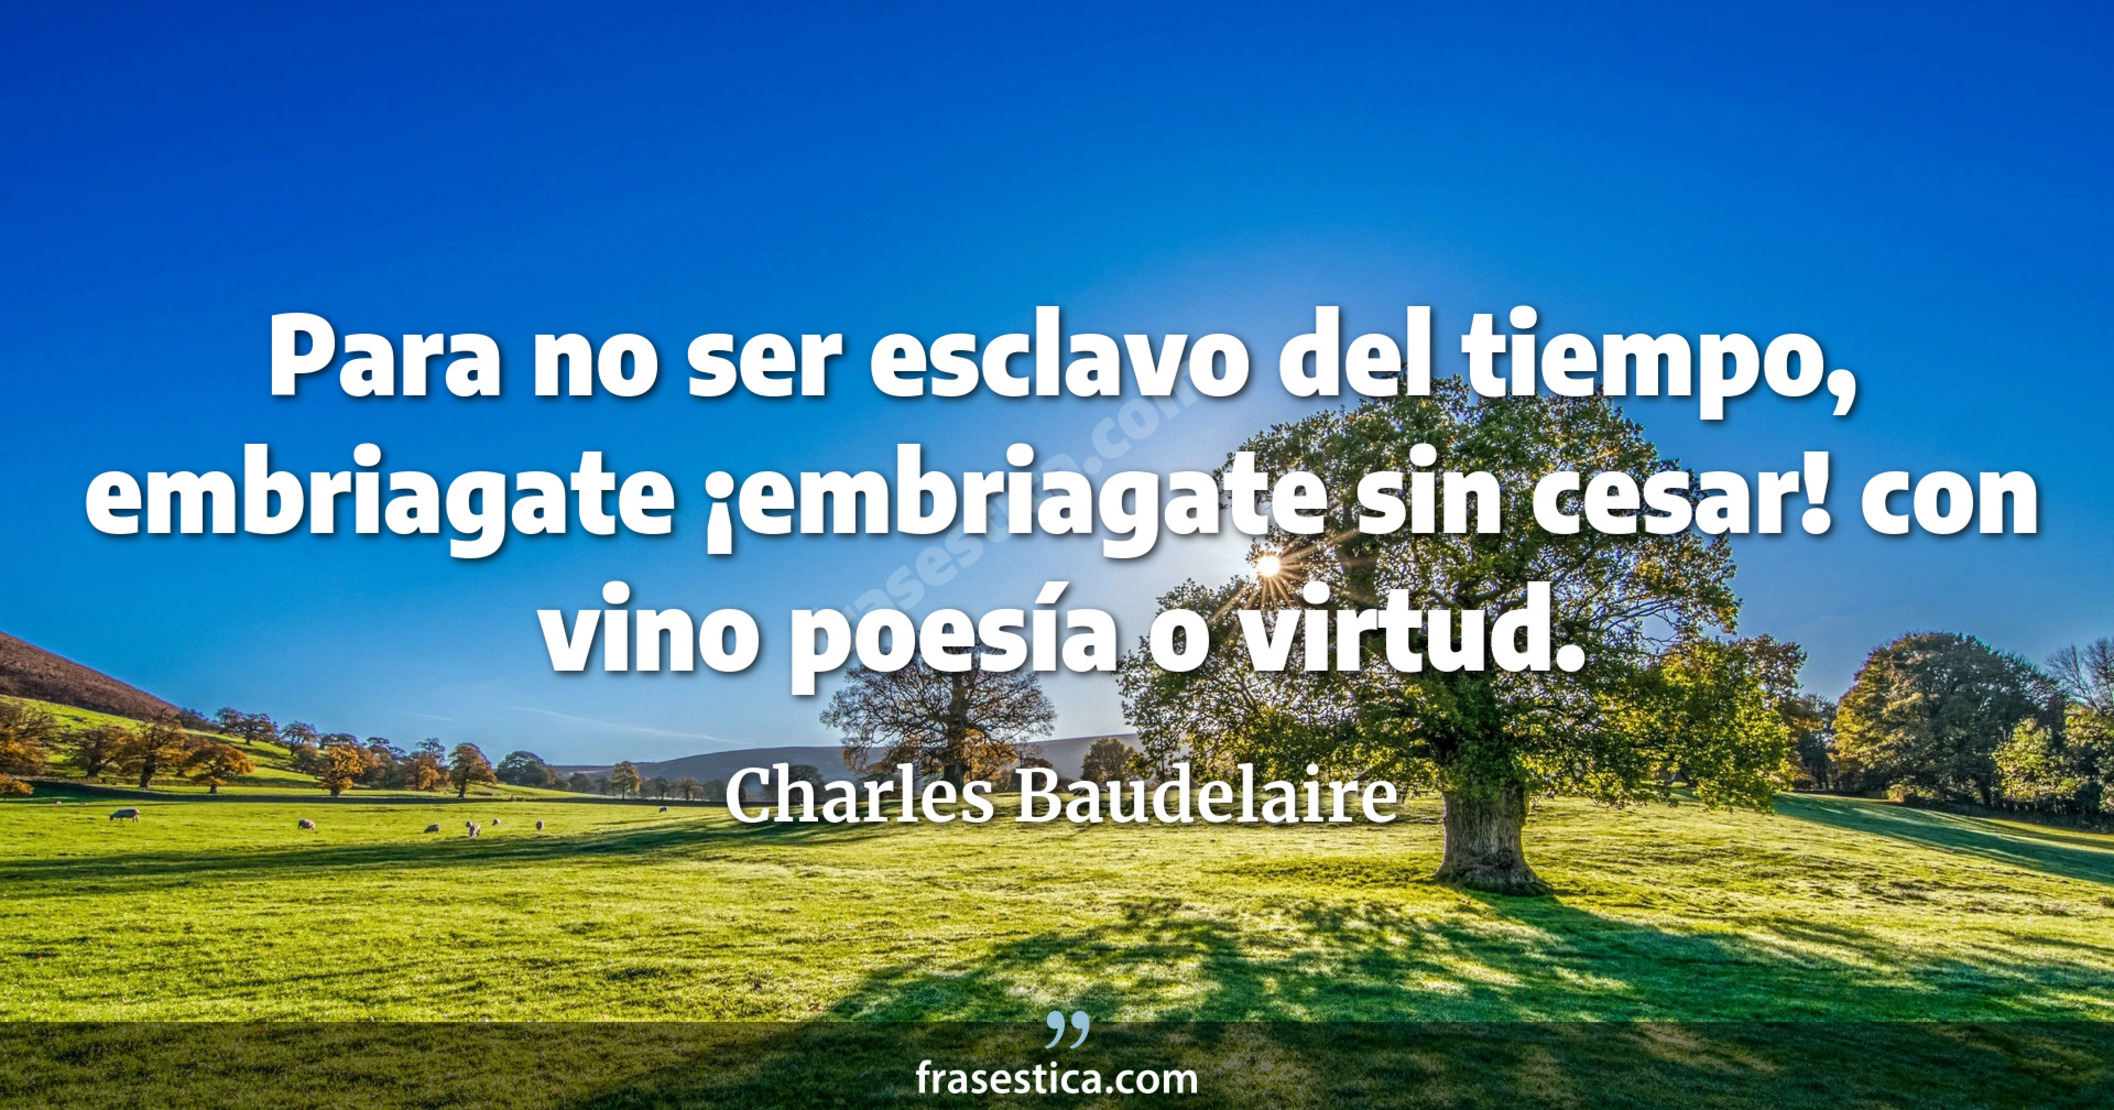 Para no ser esclavo del tiempo, embriagate ¡embriagate sin cesar! con vino poesía o virtud. - Charles Baudelaire